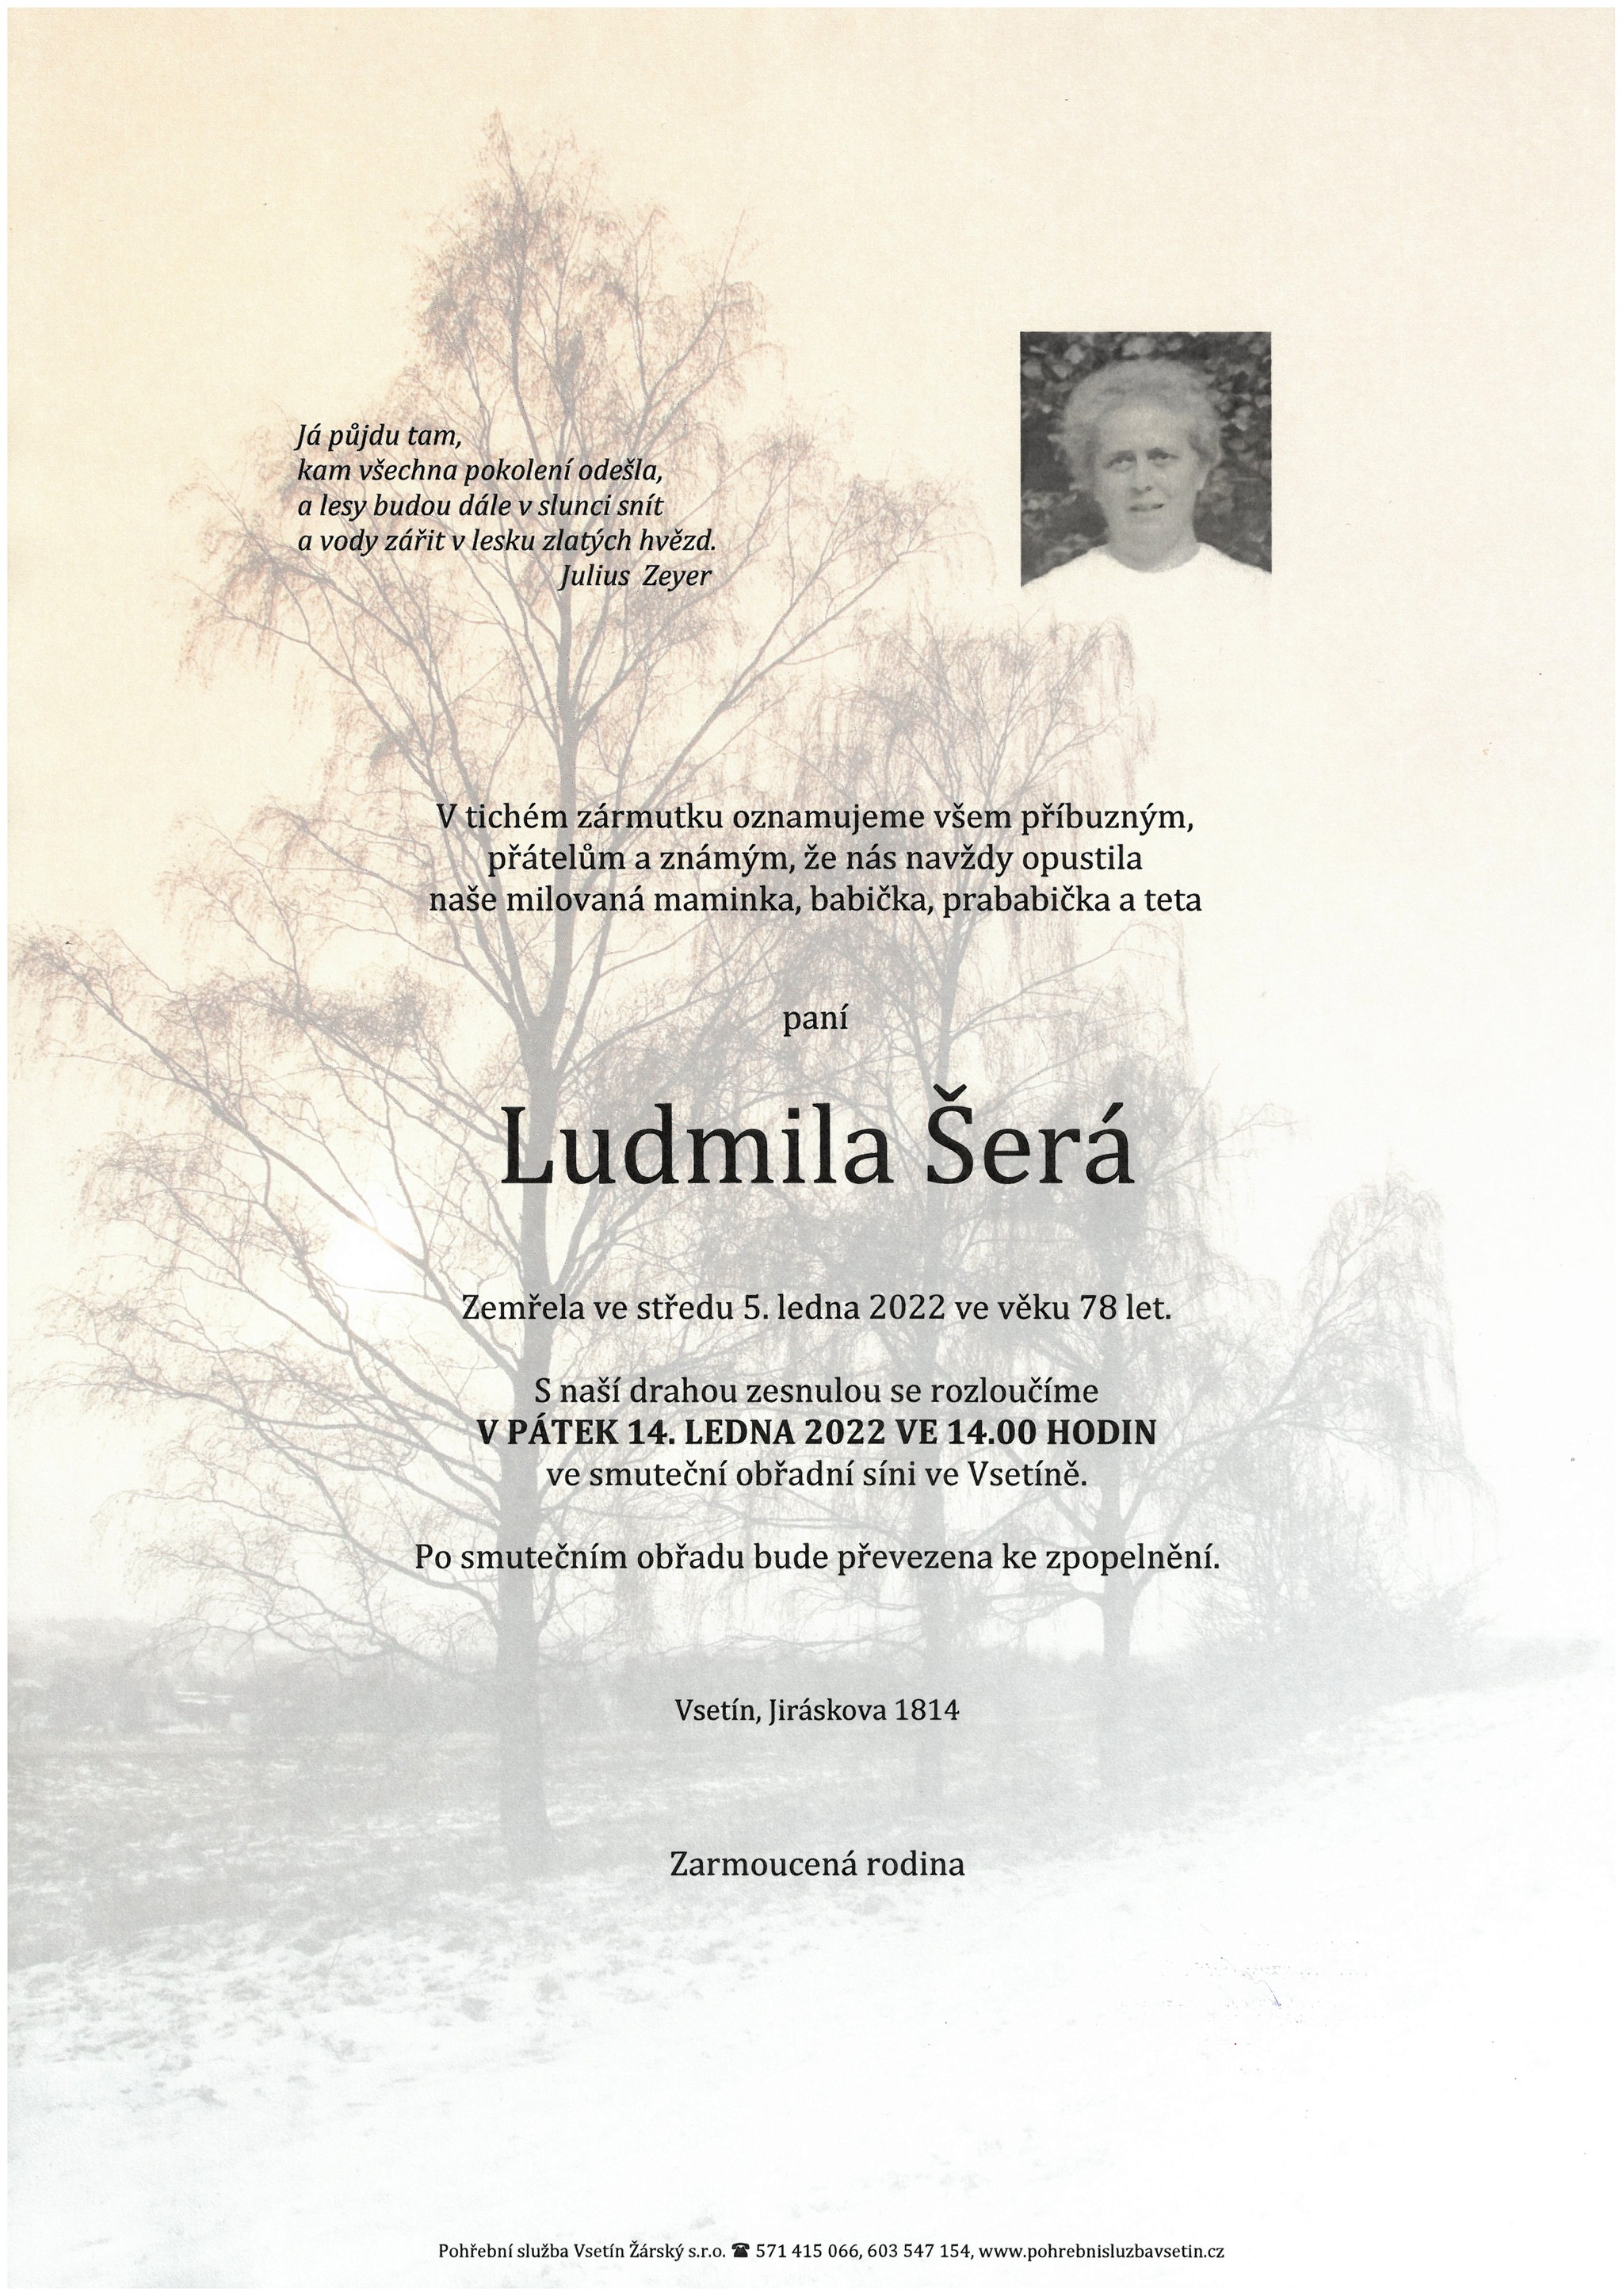 Ludmila Šerá